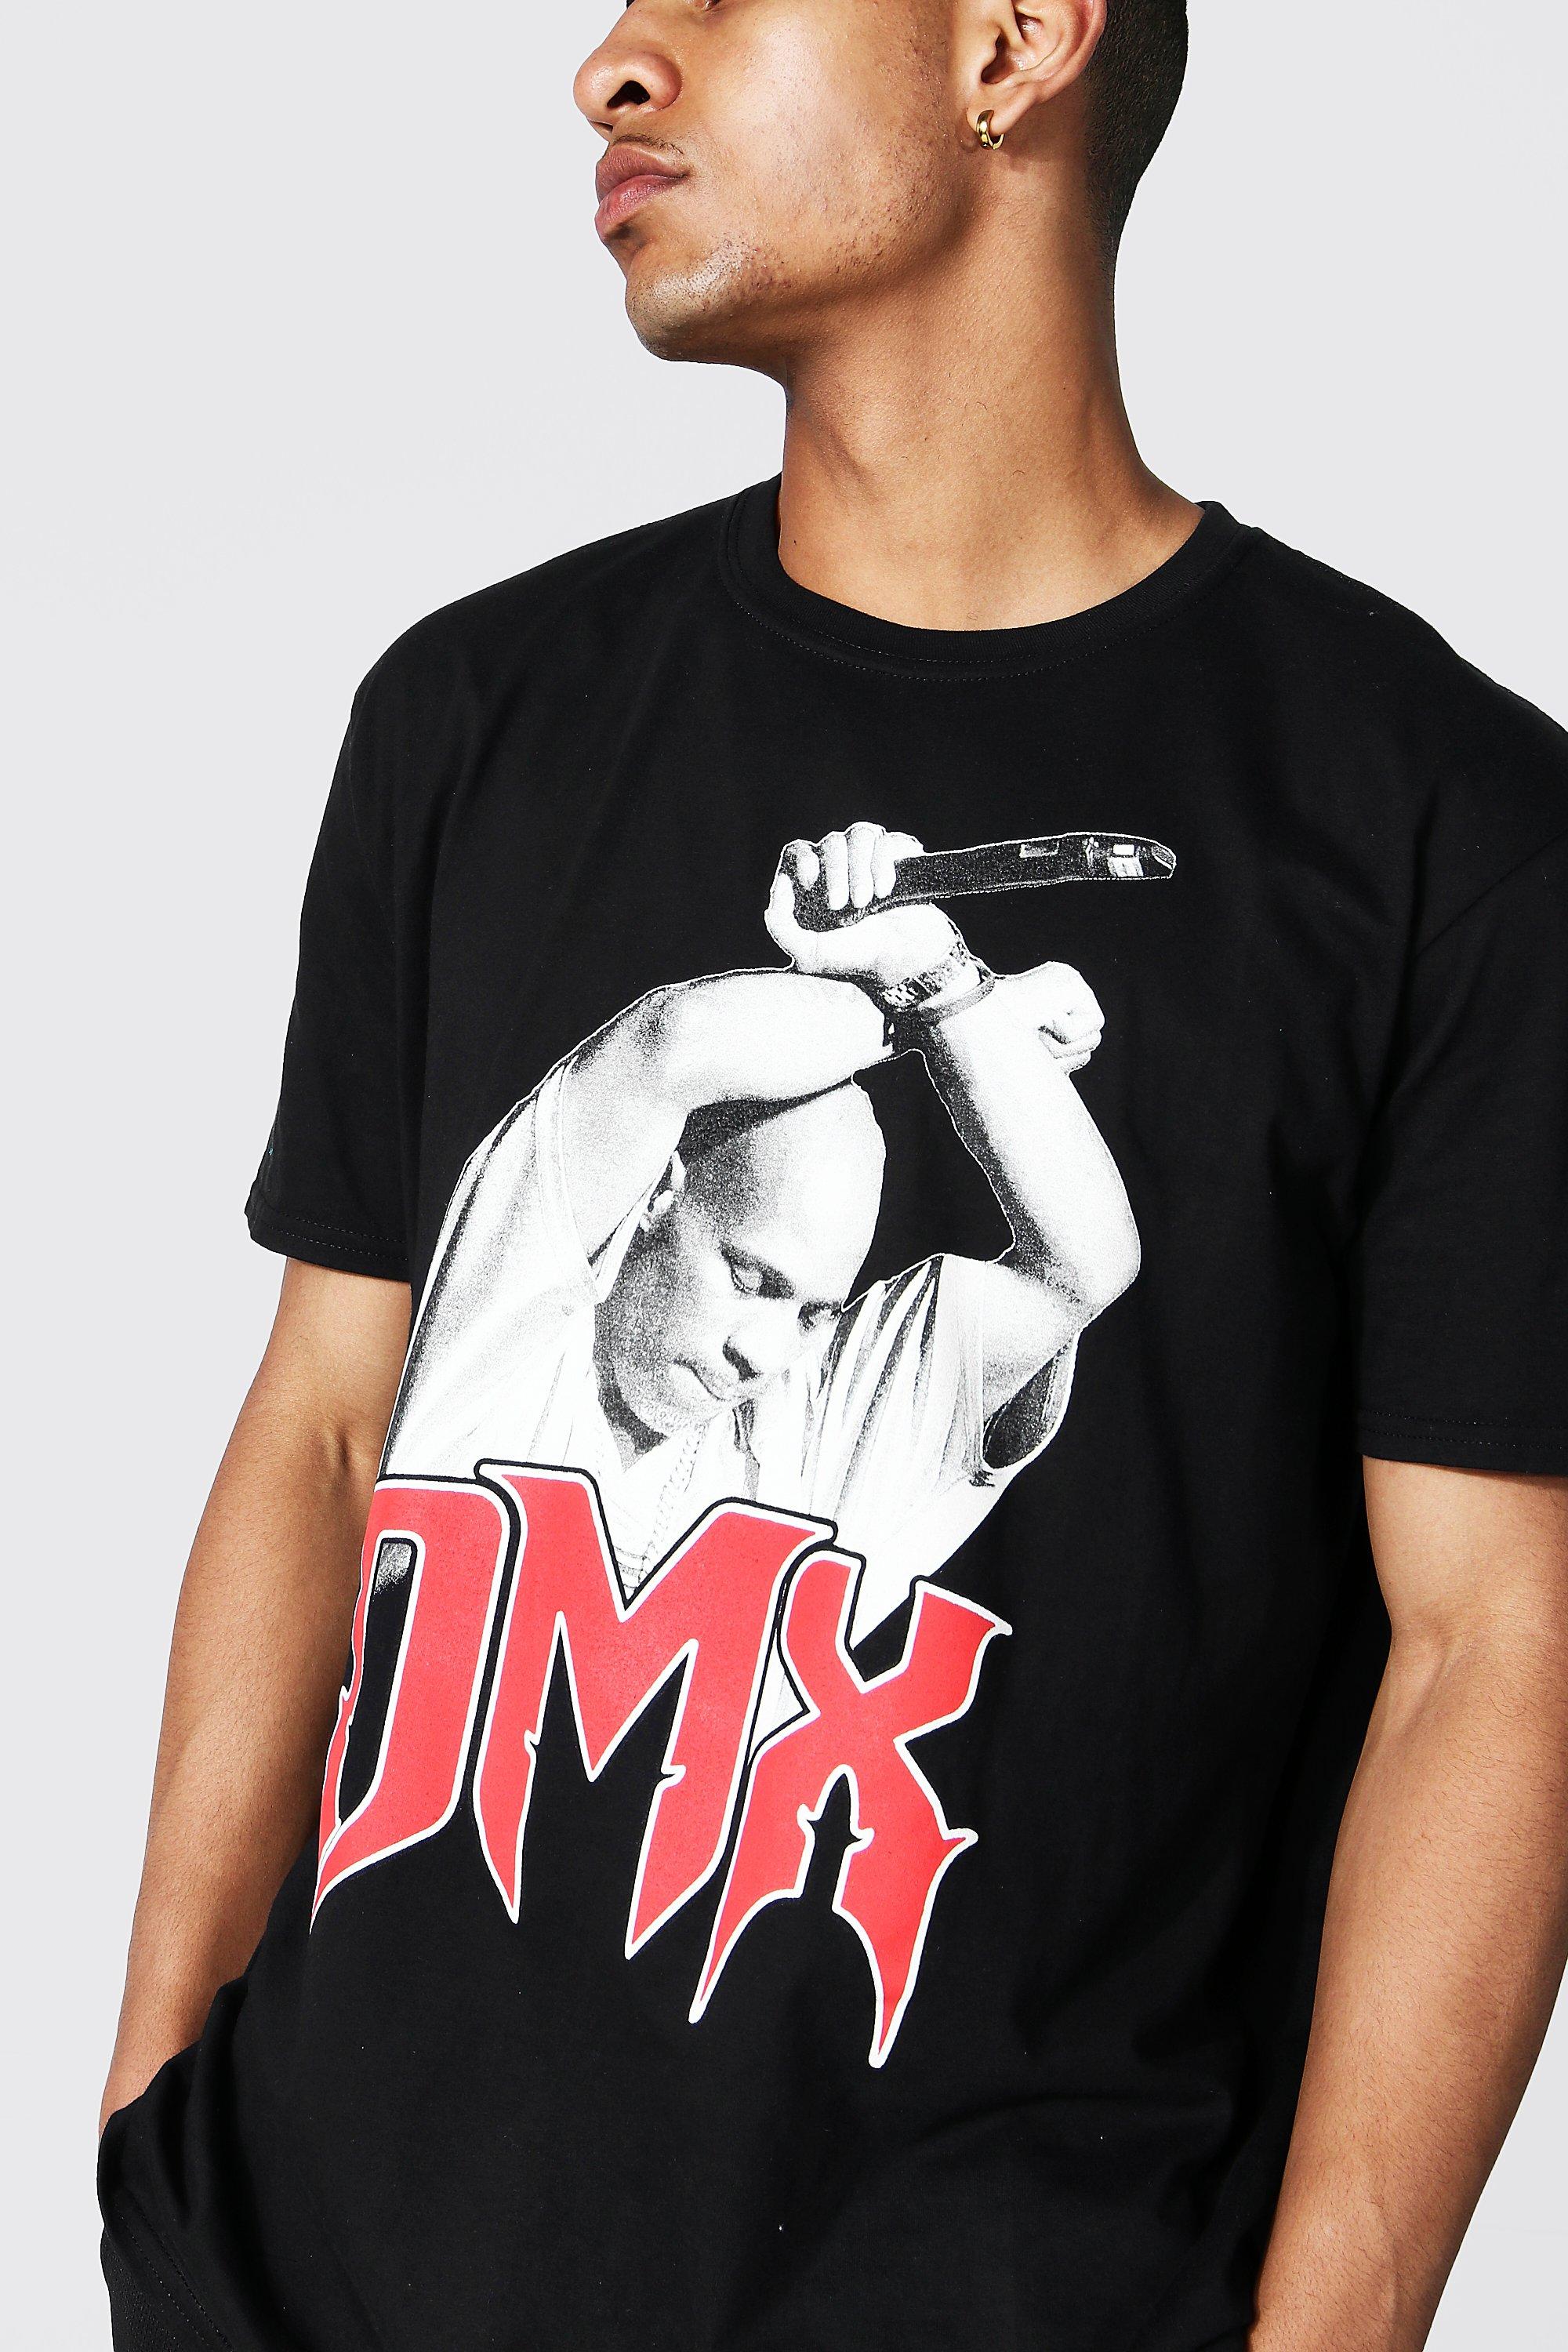 10 Men DMX T Shirt Short Sleeve Shirt Casual Design Shirt Men Tops Tees